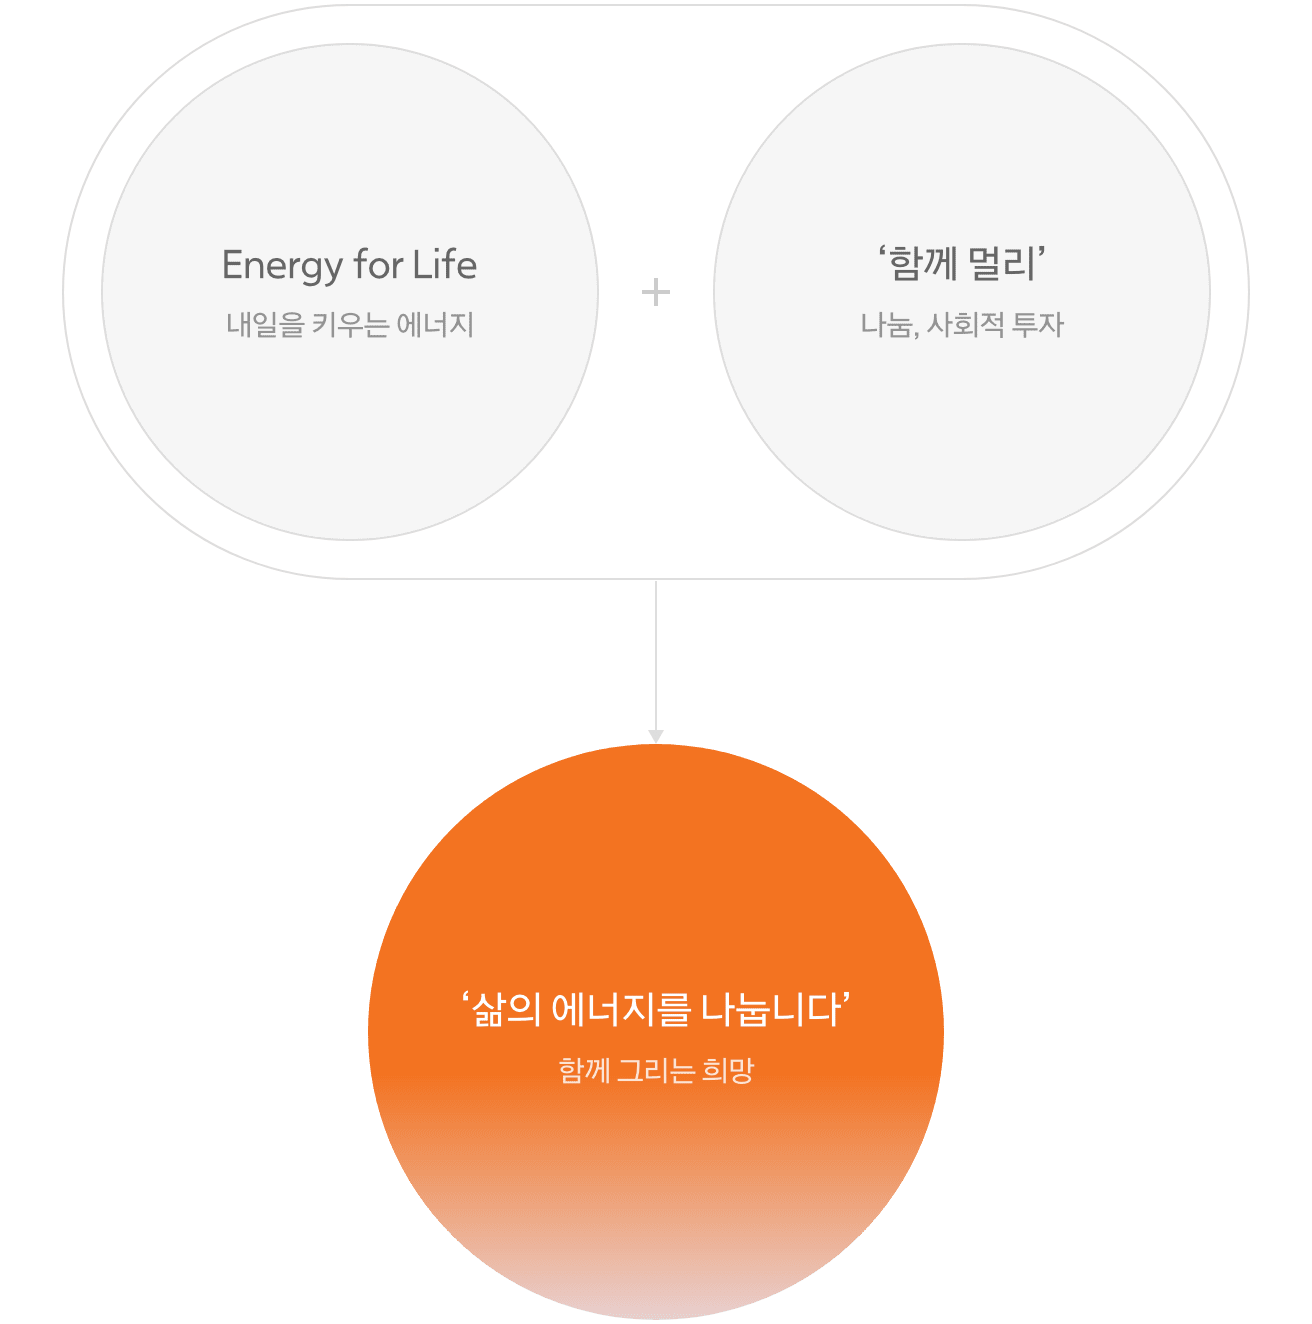 Energy for Life(내일을 키우는 에너지) + 함께멀리(나눔, 사회적 투자) = 삶의 에너지를 나눕니다(함께 그리는 희망)